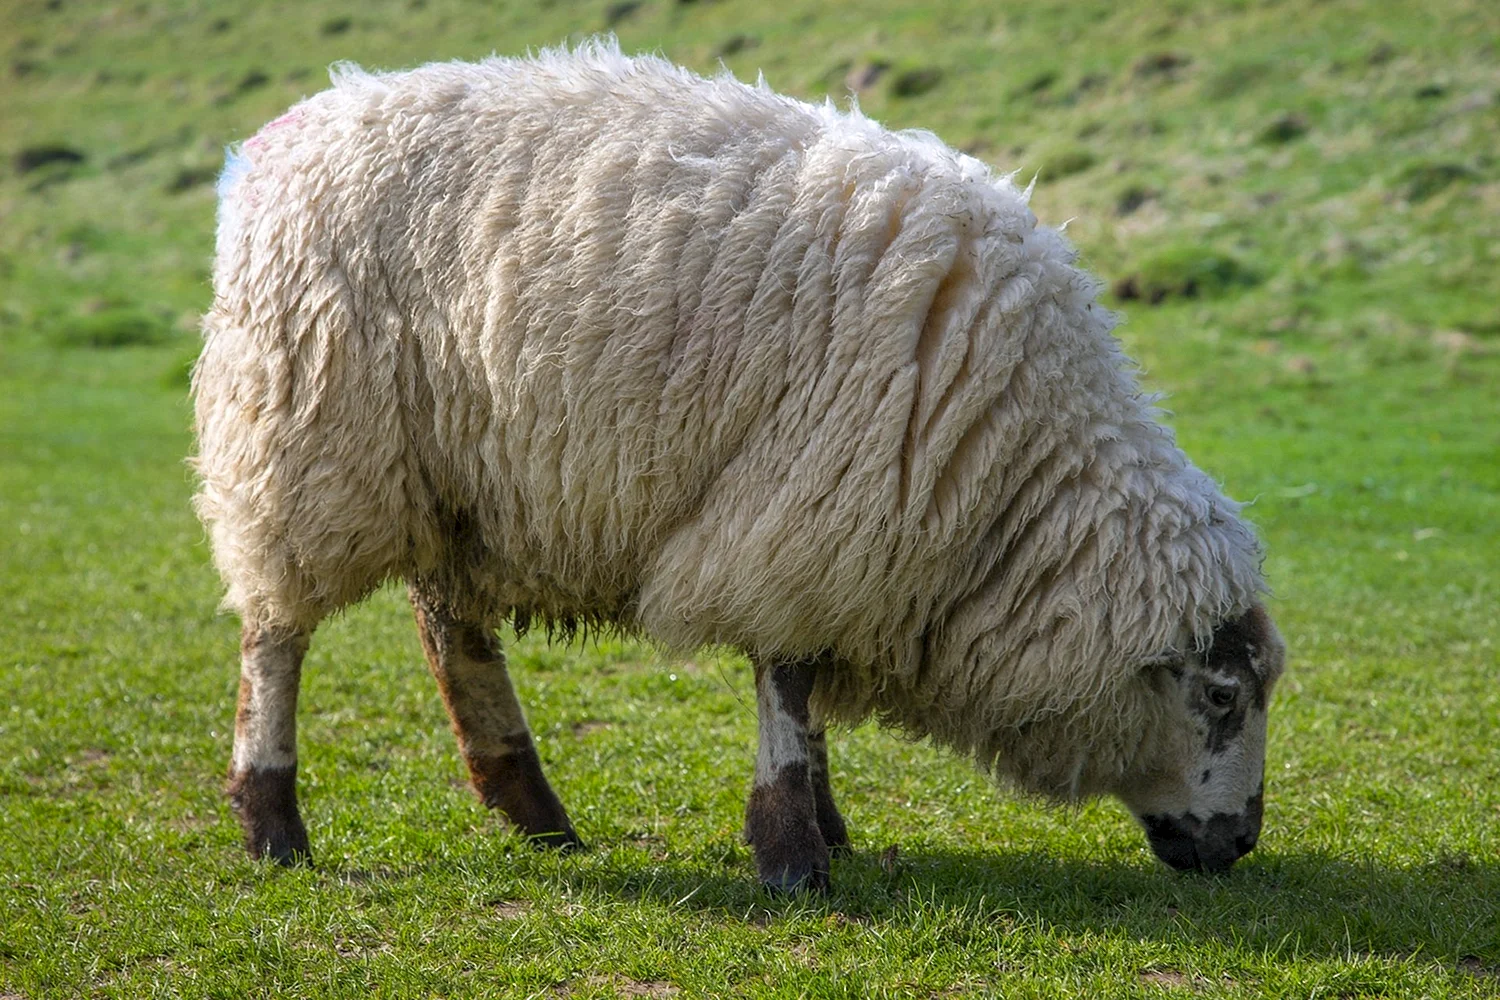 Северокавказская мясо-шерстная порода овец